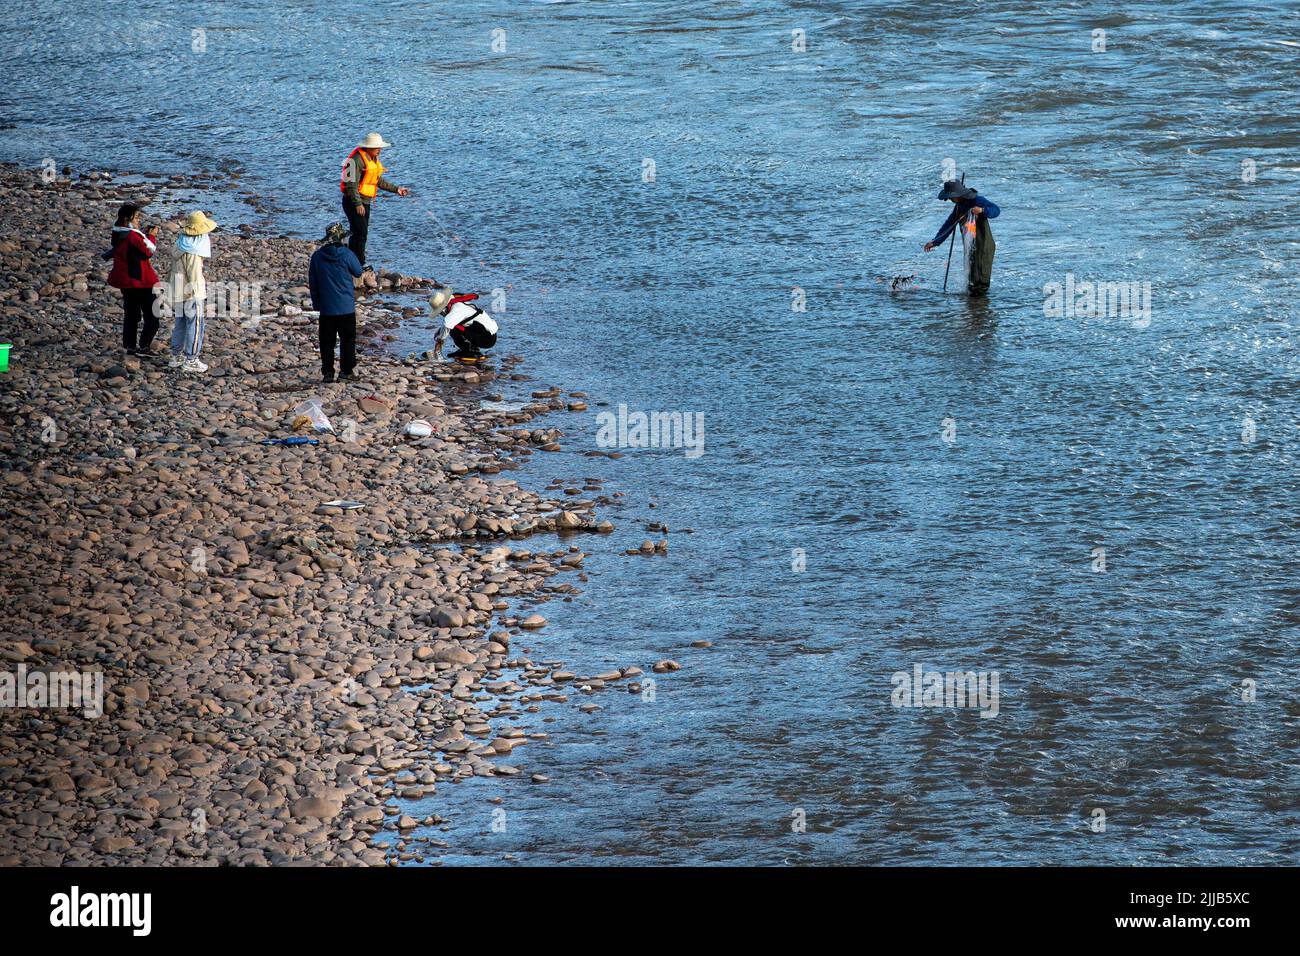 (220725) -- YUSHU, 25 de julio de 2022 (Xinhua) -- Miembros de un equipo de expedición científica recolectan muestras de vida acuática de la región de las cabeceras del río Lancang en el condado de Zadoi, Prefectura Autónoma Tibetana de Yushu, provincia Qinghai, noroeste de China, 24 de julio de 2022. Científicos chinos lanzaron el domingo una expedición en las cabeceras de los ríos Yangtze y Lancang en la provincia Qinghai, noroeste de China, para investigar los recursos hídricos y el medio ambiente ecológico de la región. La expedición llevará a cabo investigaciones científicas sobre los recursos hídricos, hidrología fluvial, ecología del agua Foto de stock